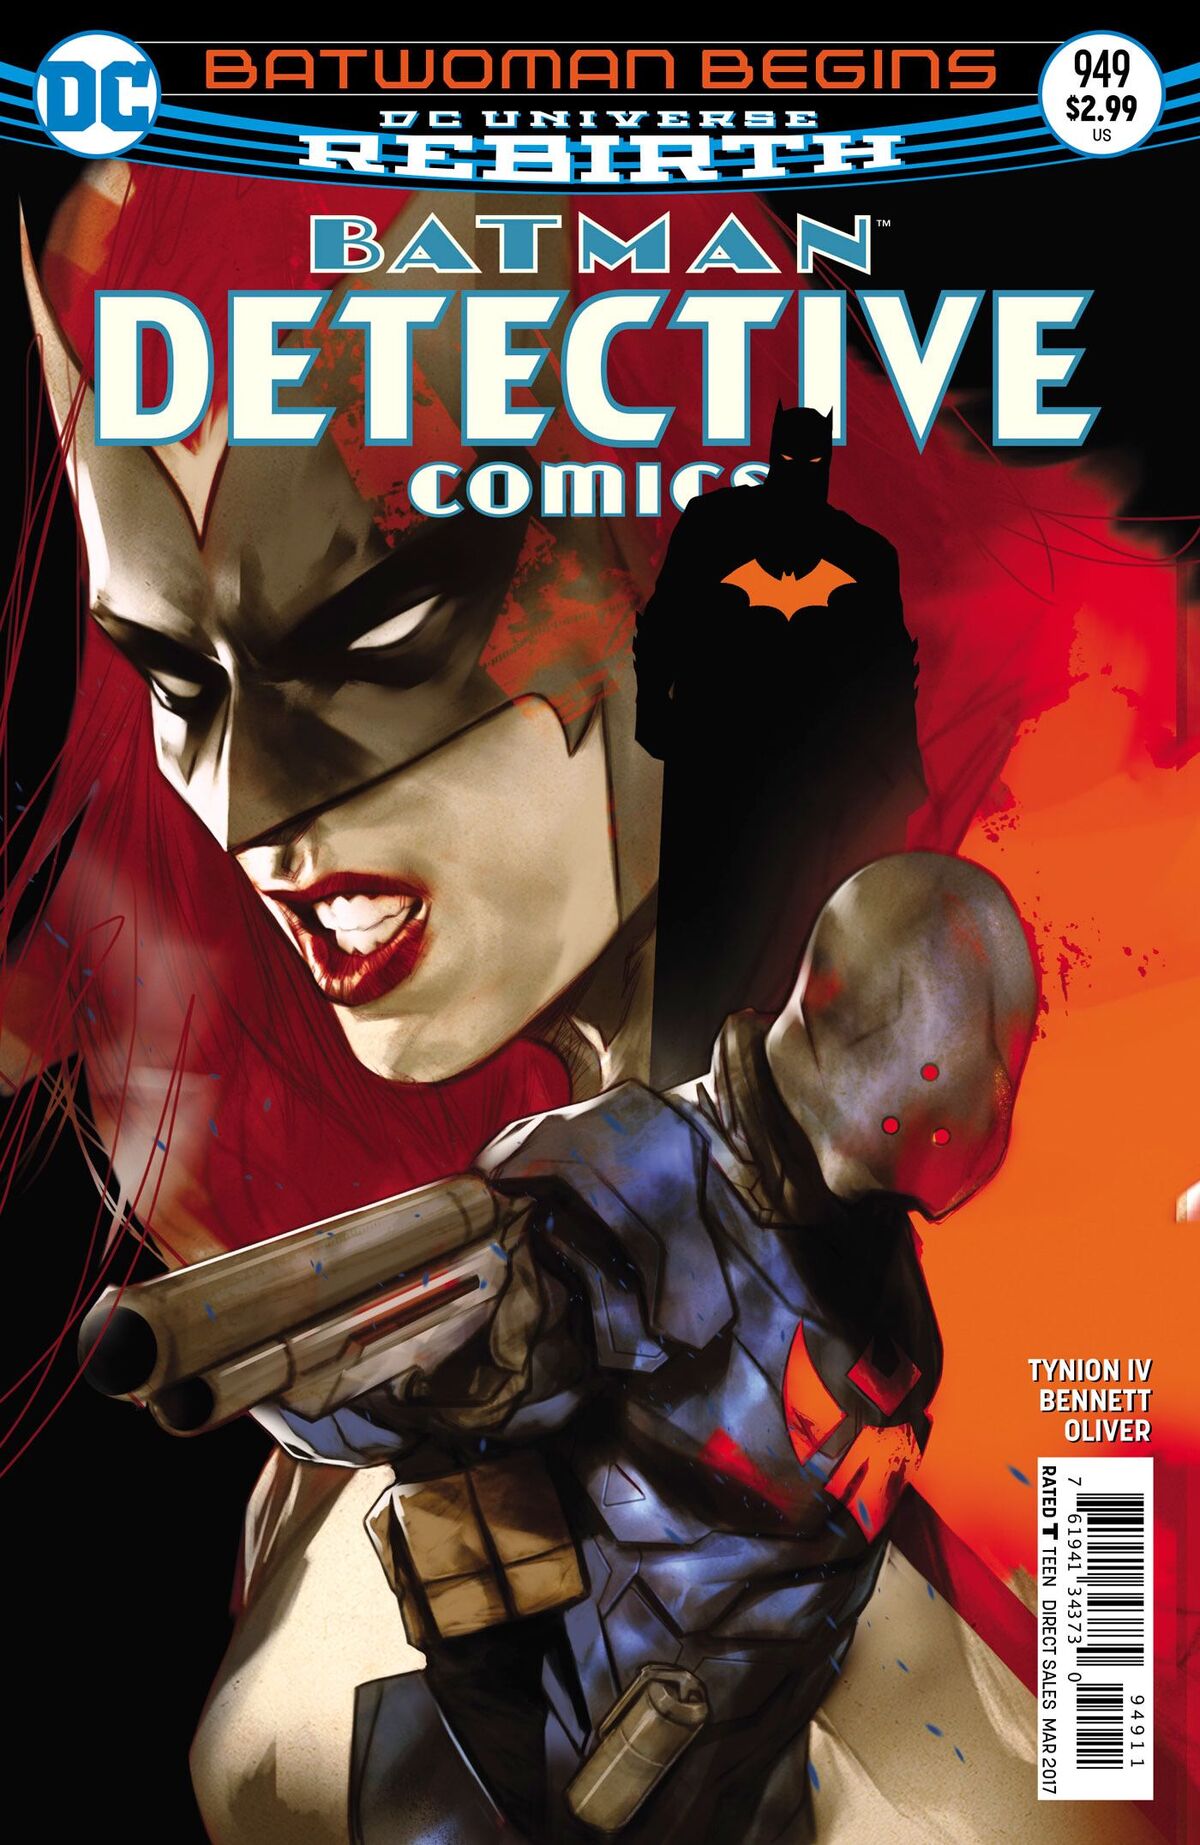 Batwoman Begins Batman Detective Comics DC Rebirth Issue 949